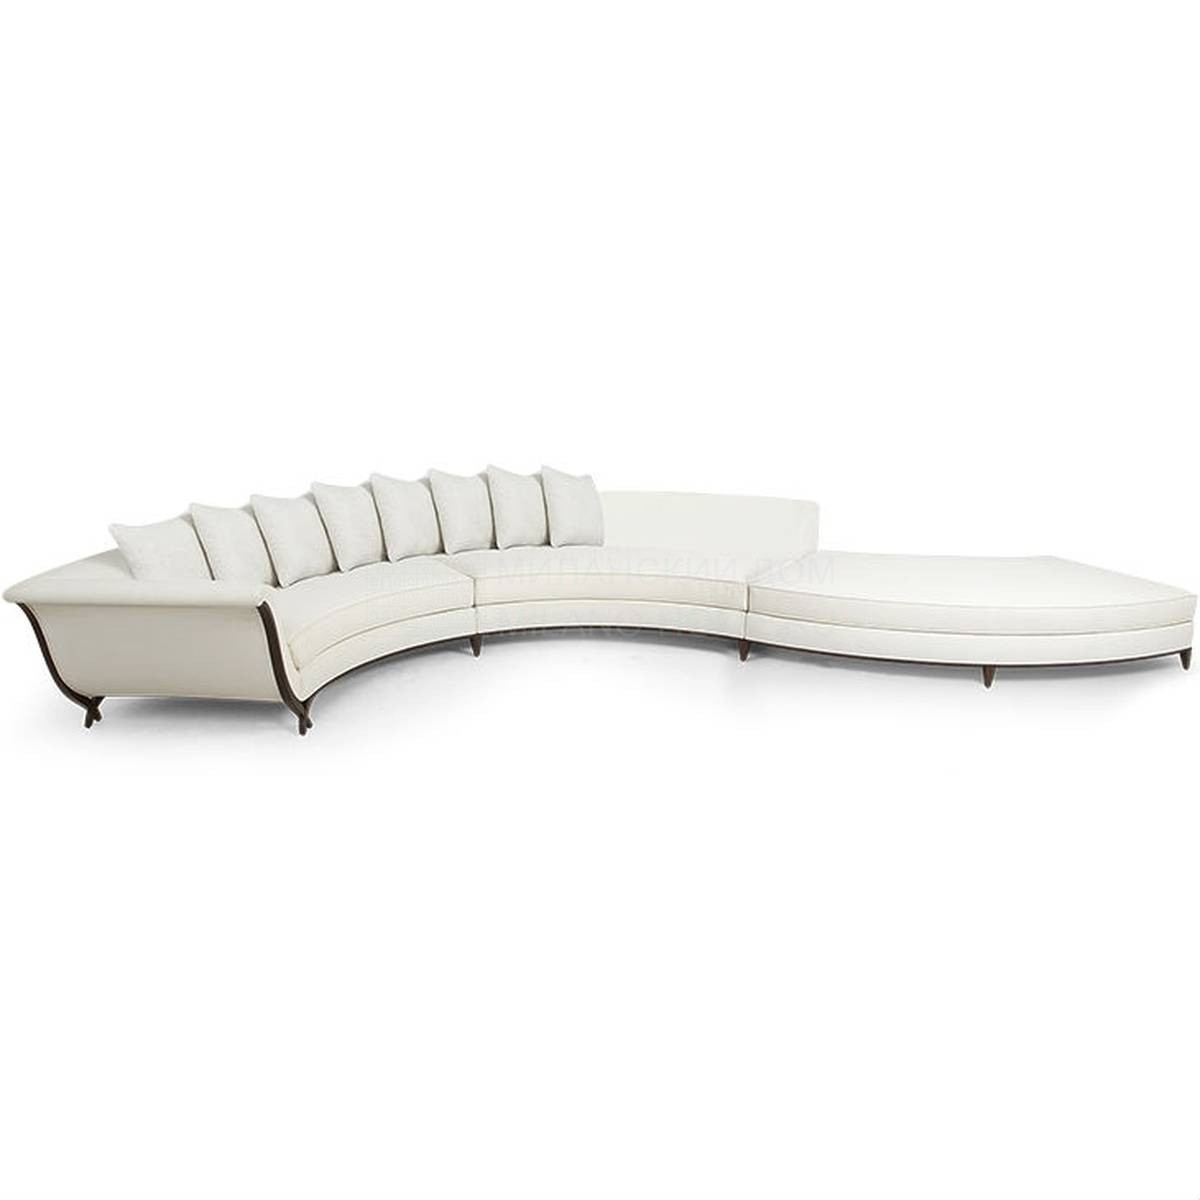 Круглый диван Fioriture sofa из США фабрики CHRISTOPHER GUY